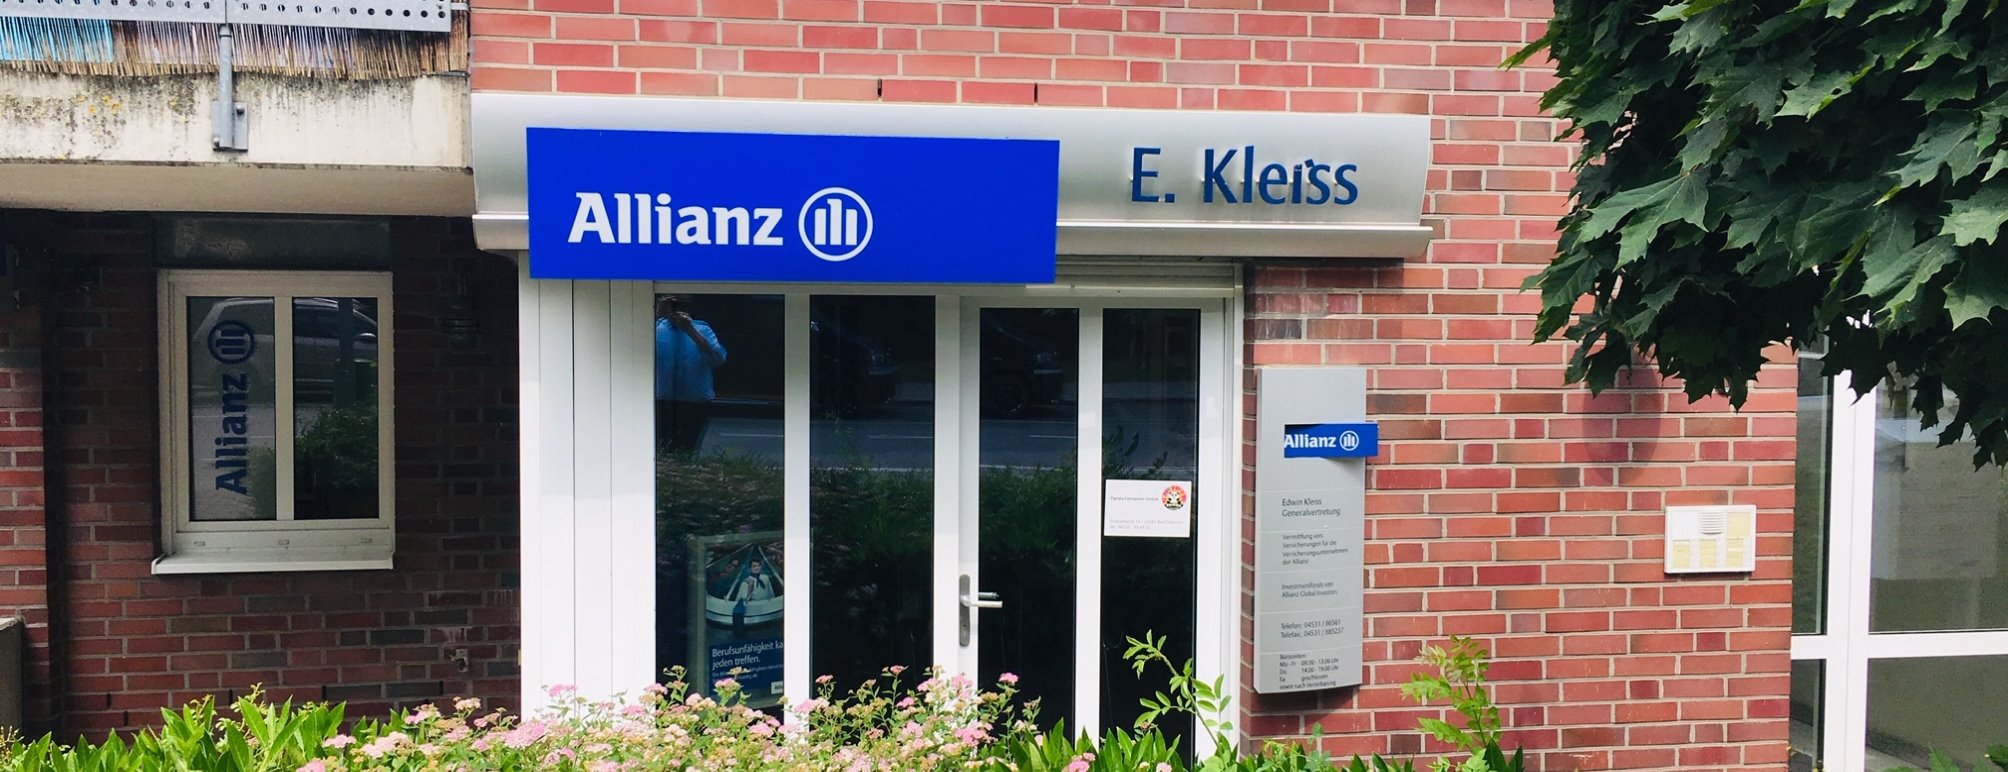 Allianz Versicherung Edwin Kleiß Bad Oldesloe - Titelbild